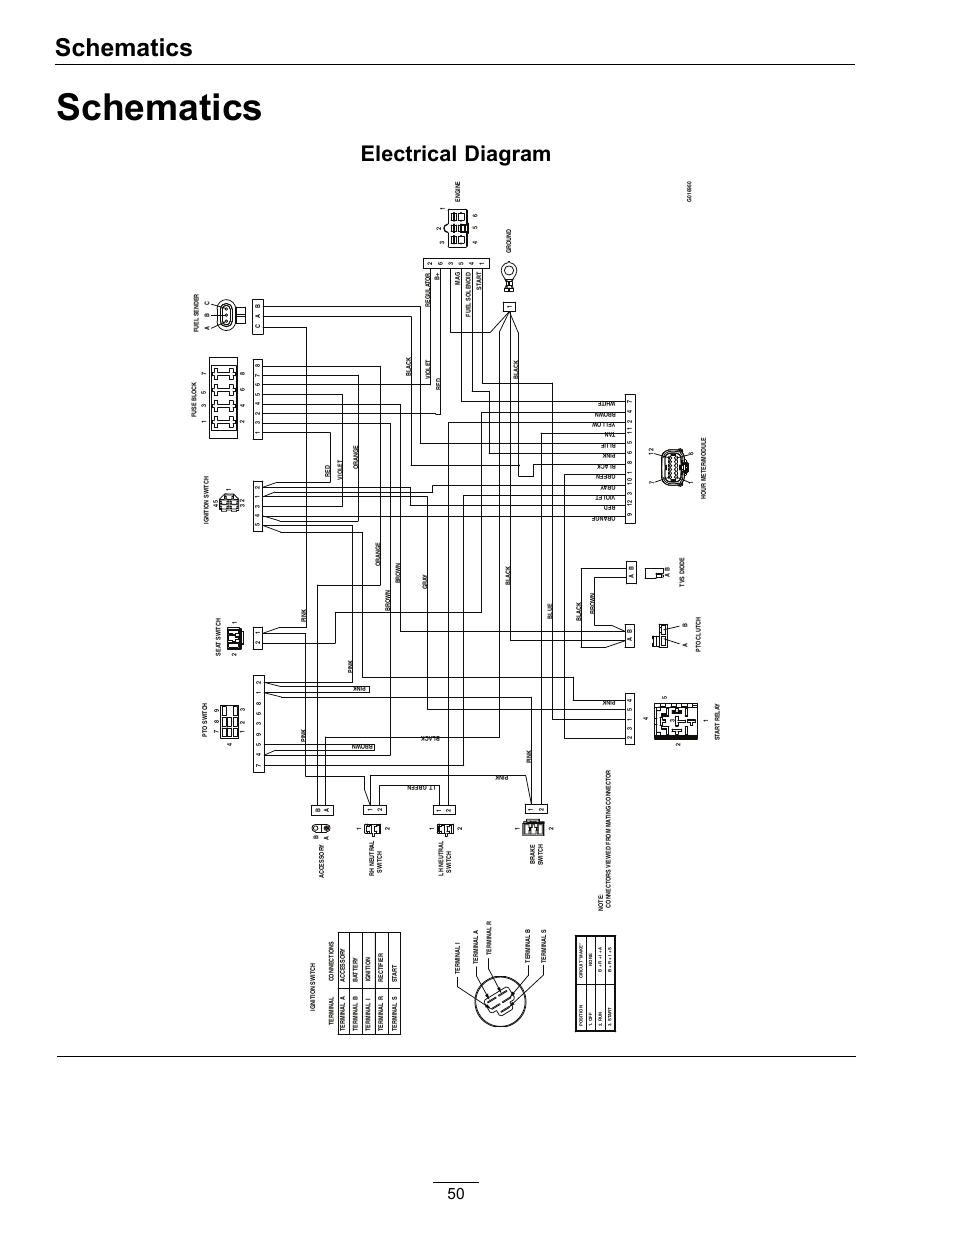 wiring diagram toyota kijang